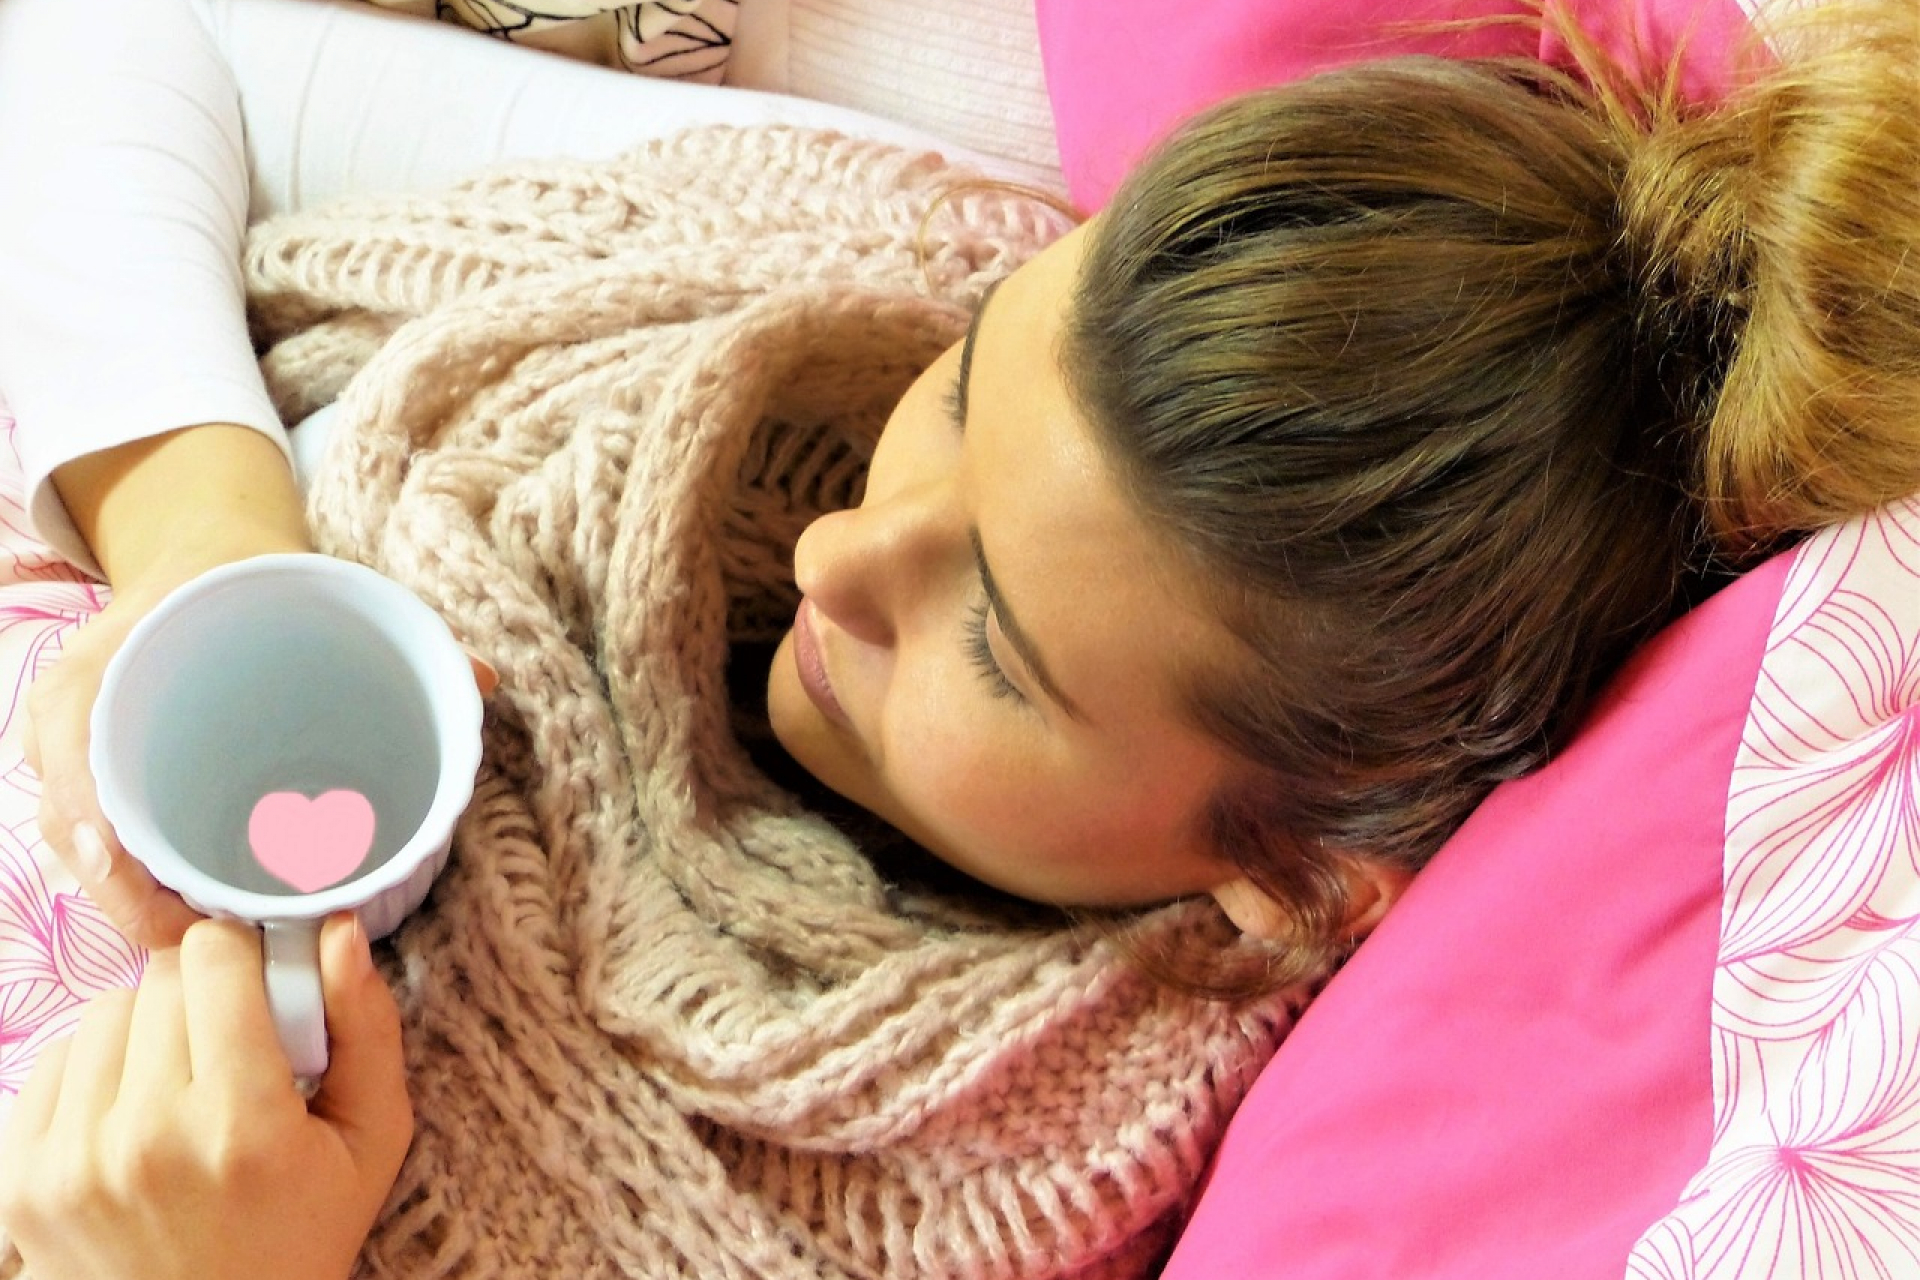 Megfázott? – tippek a nátha és a köhögés kezelésére